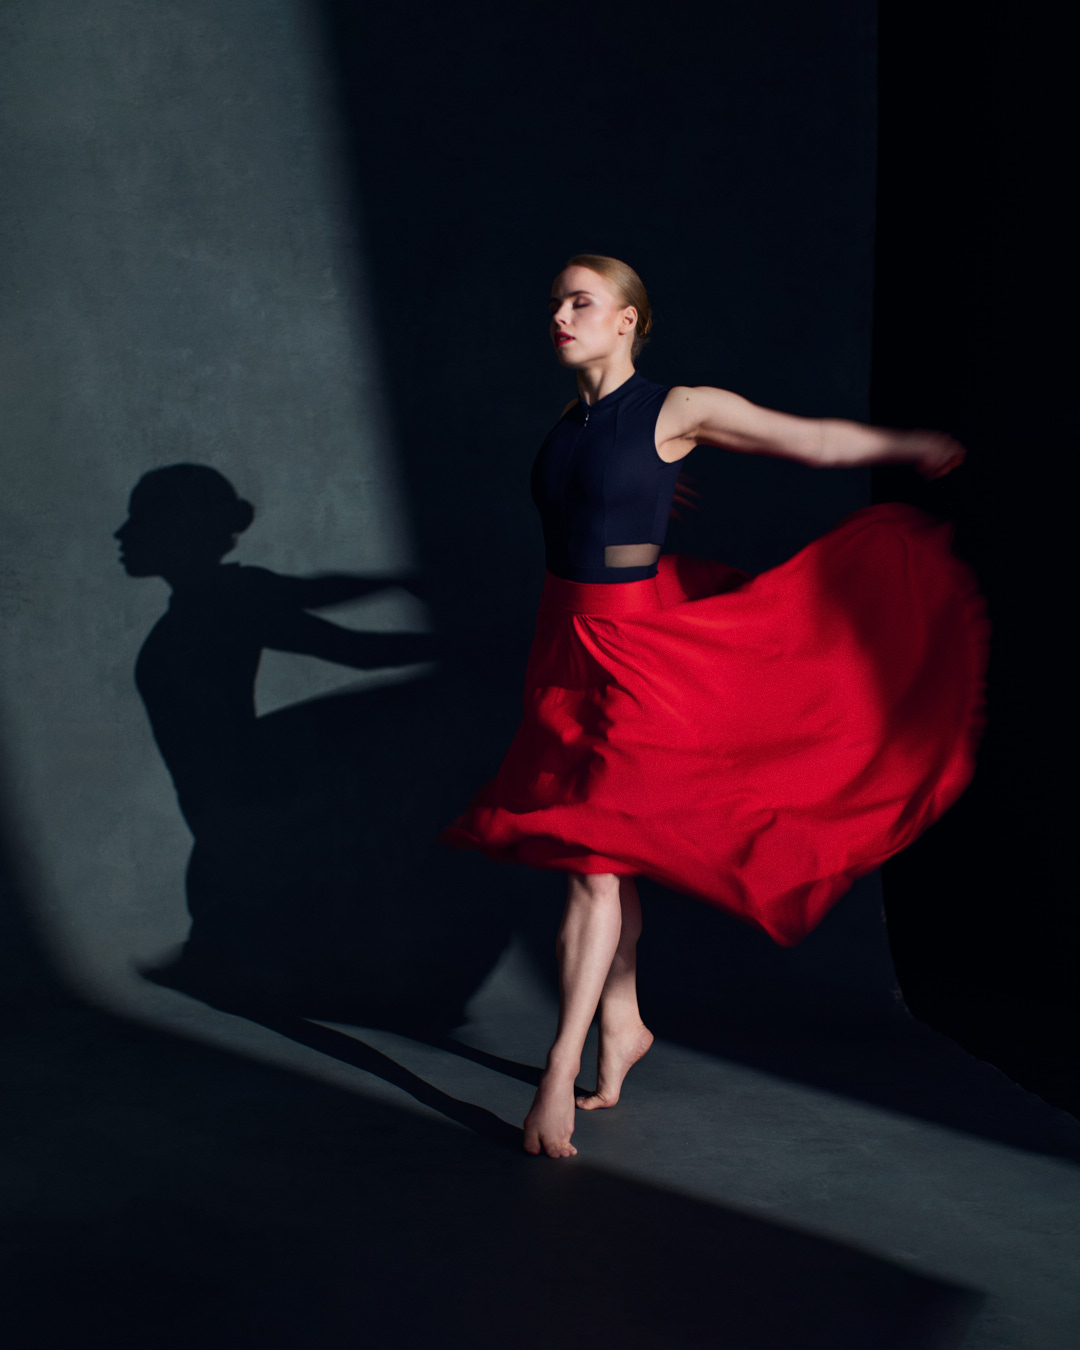 Muotokuva tanssijasta, liike ja tunnelma, punainen mekko